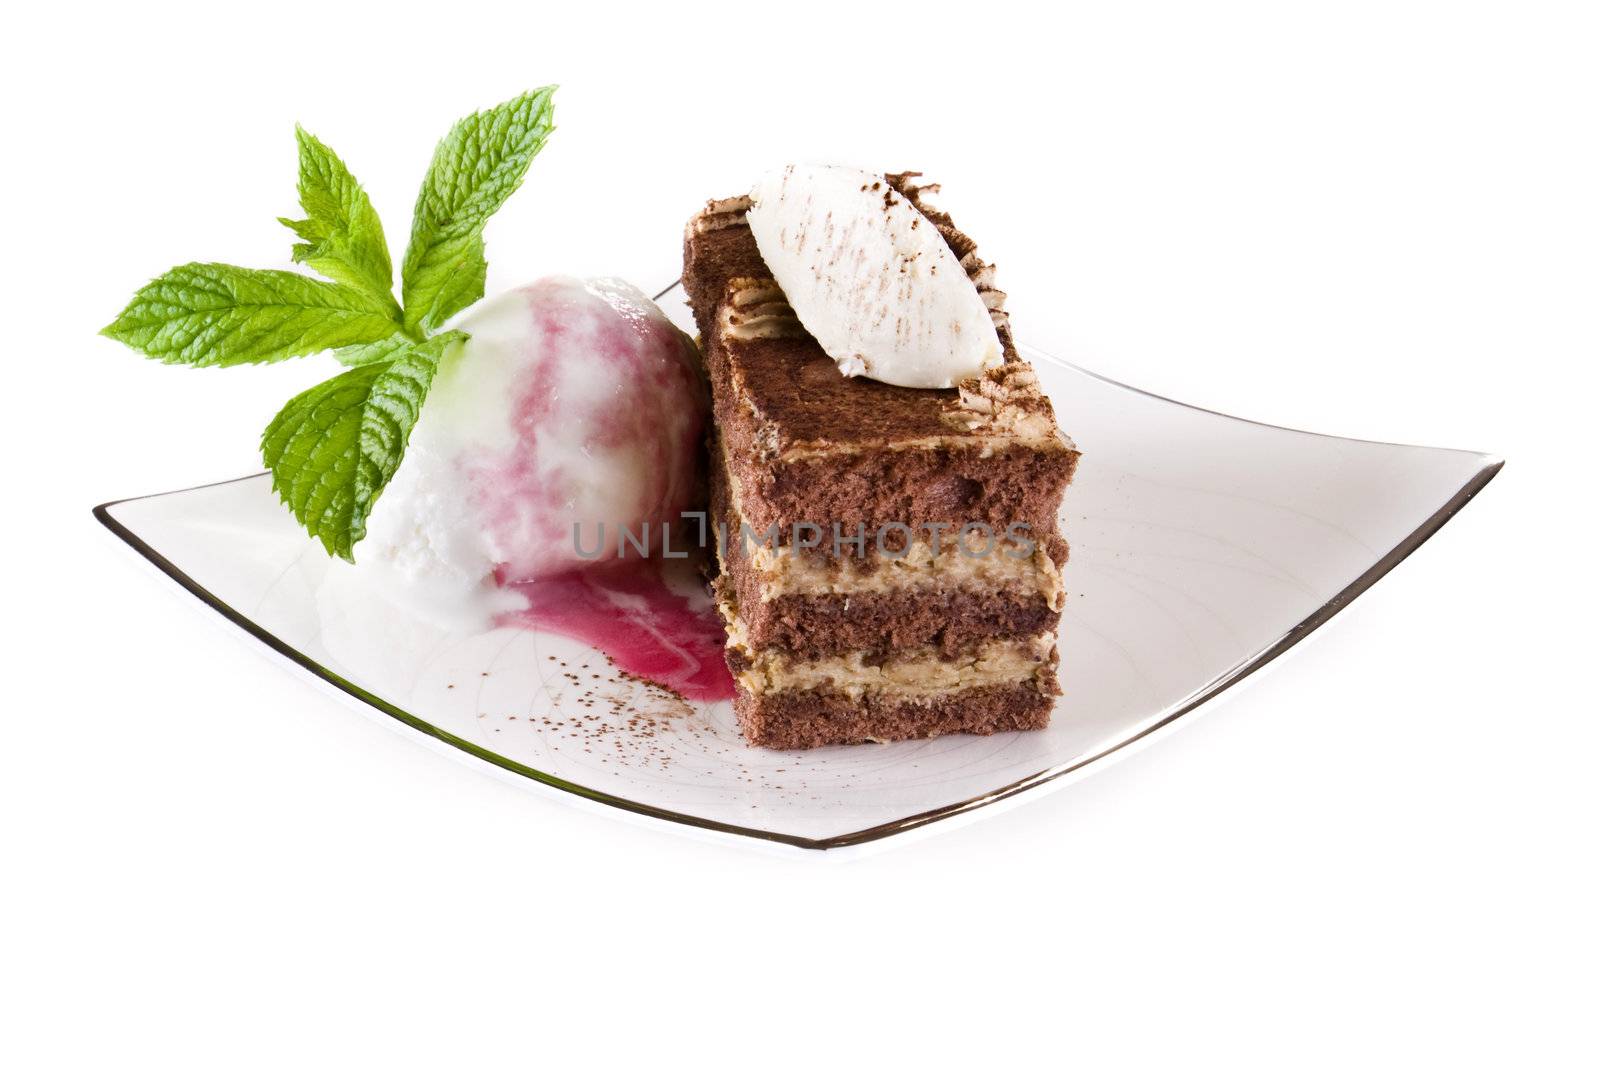 Tiramisu cake with ice cream by caldix